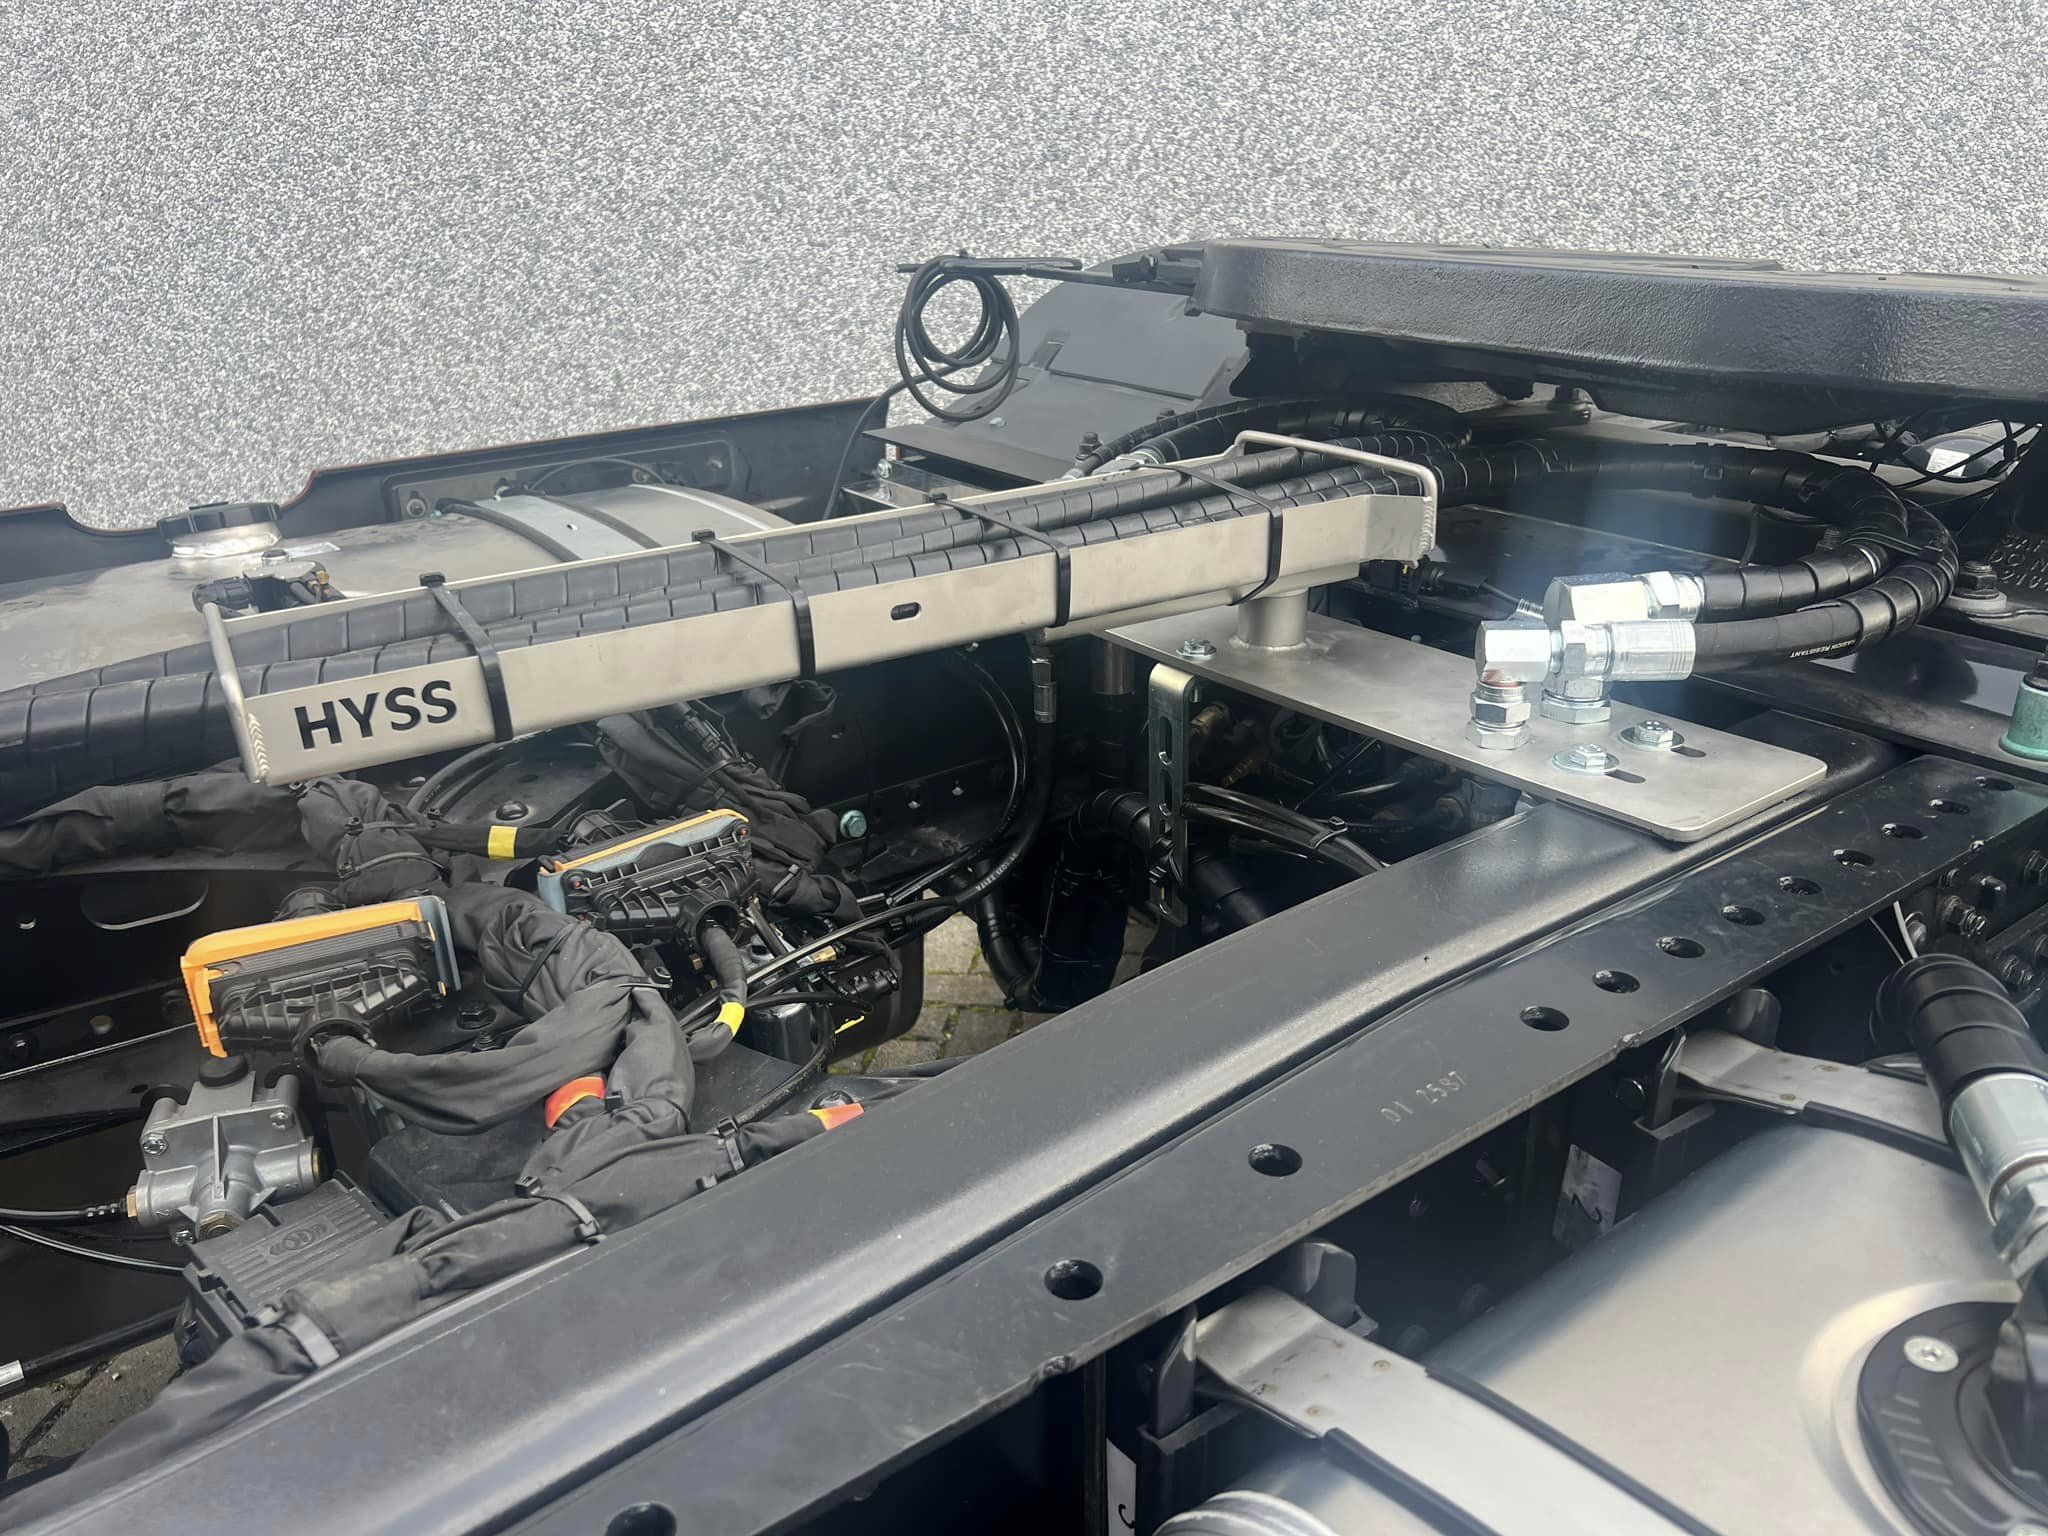 Système hydraulique pour la commande d’un camion à benne basculante en combinaison avec une grue de chargement